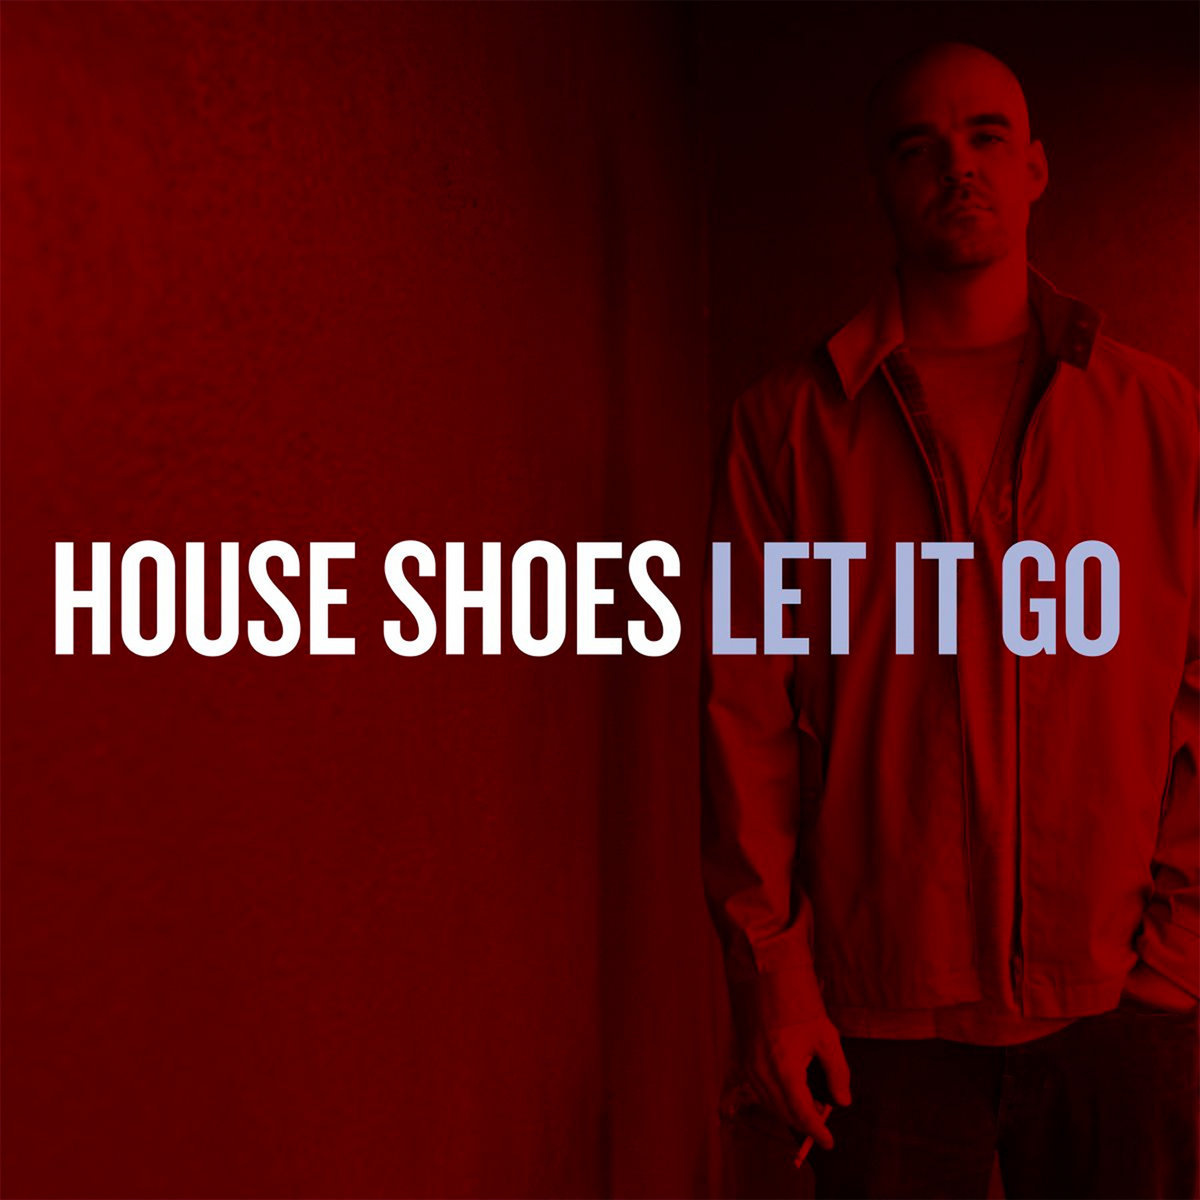 Let_it_go_house_shoes